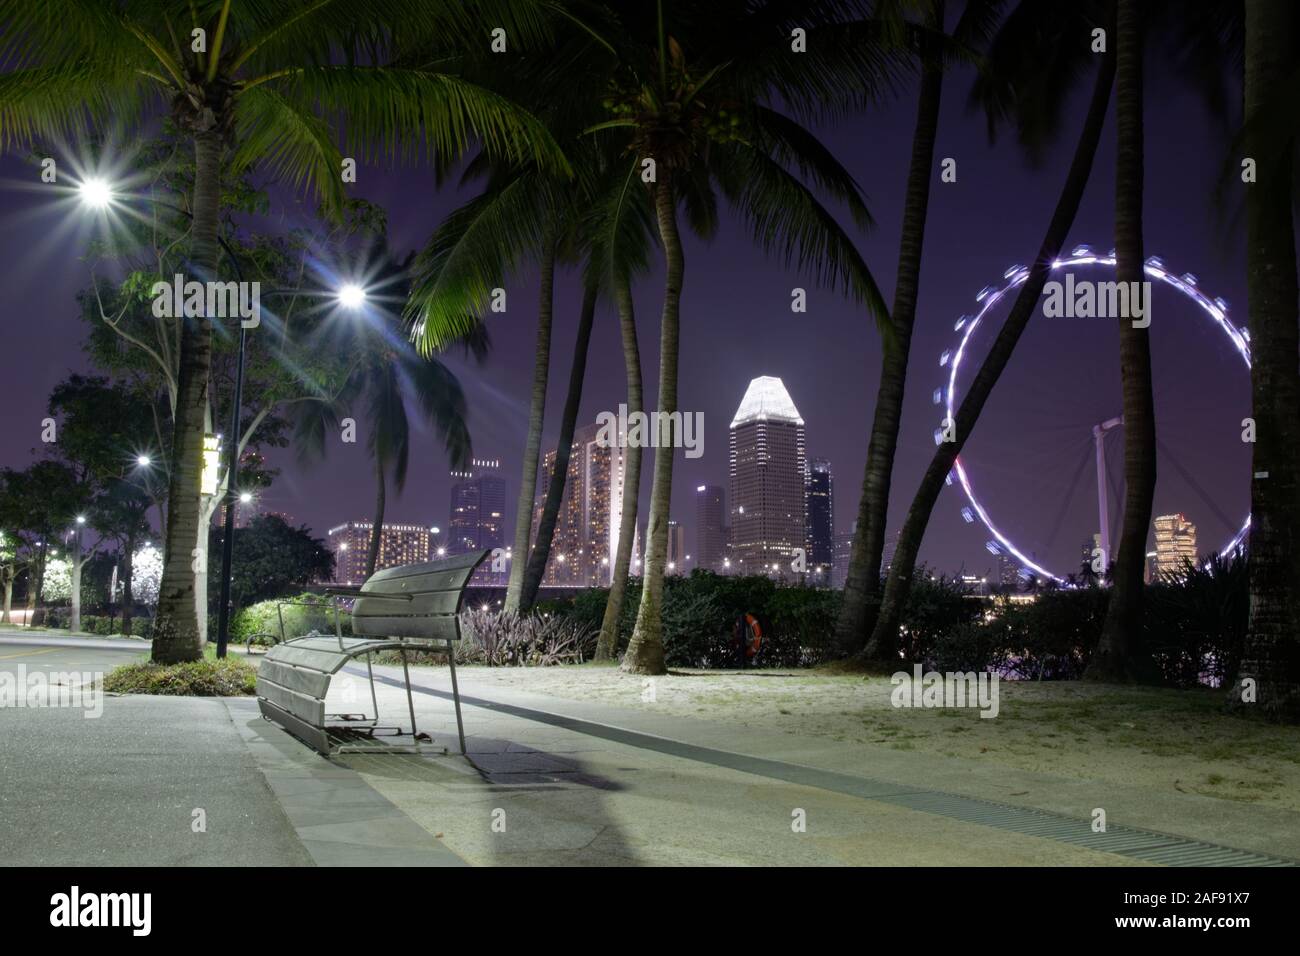 Flayer allégé, roue pendant la nuit entouré de palmiers au cours de la nuit dans les jardins de la baie à Singapour Banque D'Images